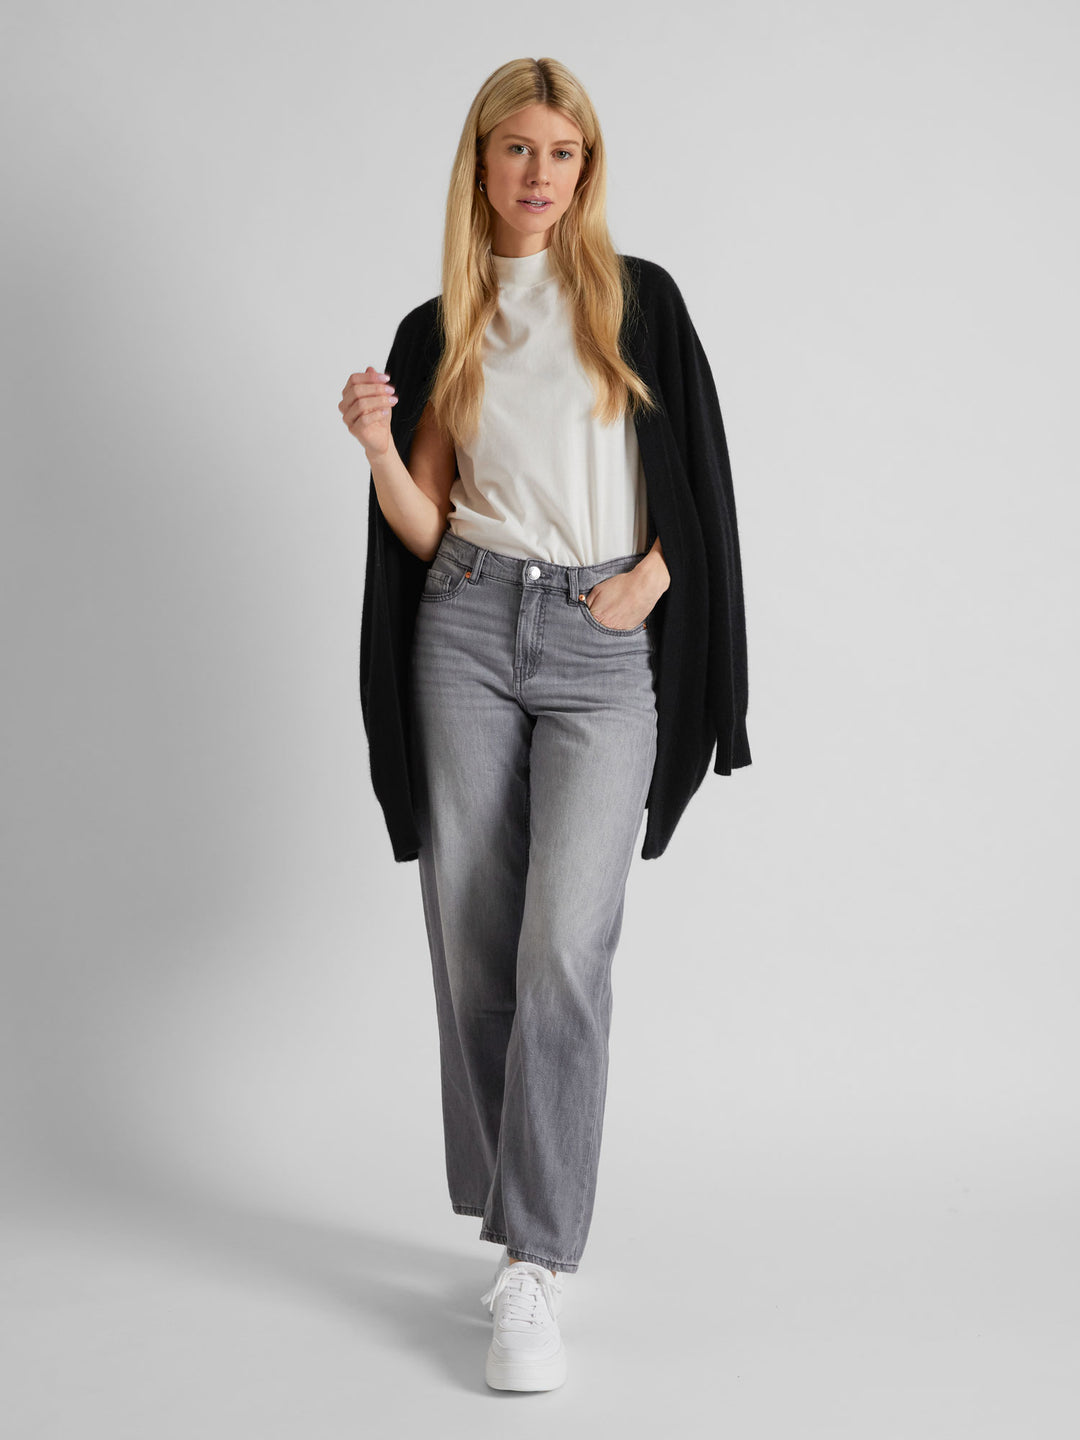 Cashmere cardigan "Solveig" in 100% pure cashmere. Scandinavian design by Kashmina. Color: Black.